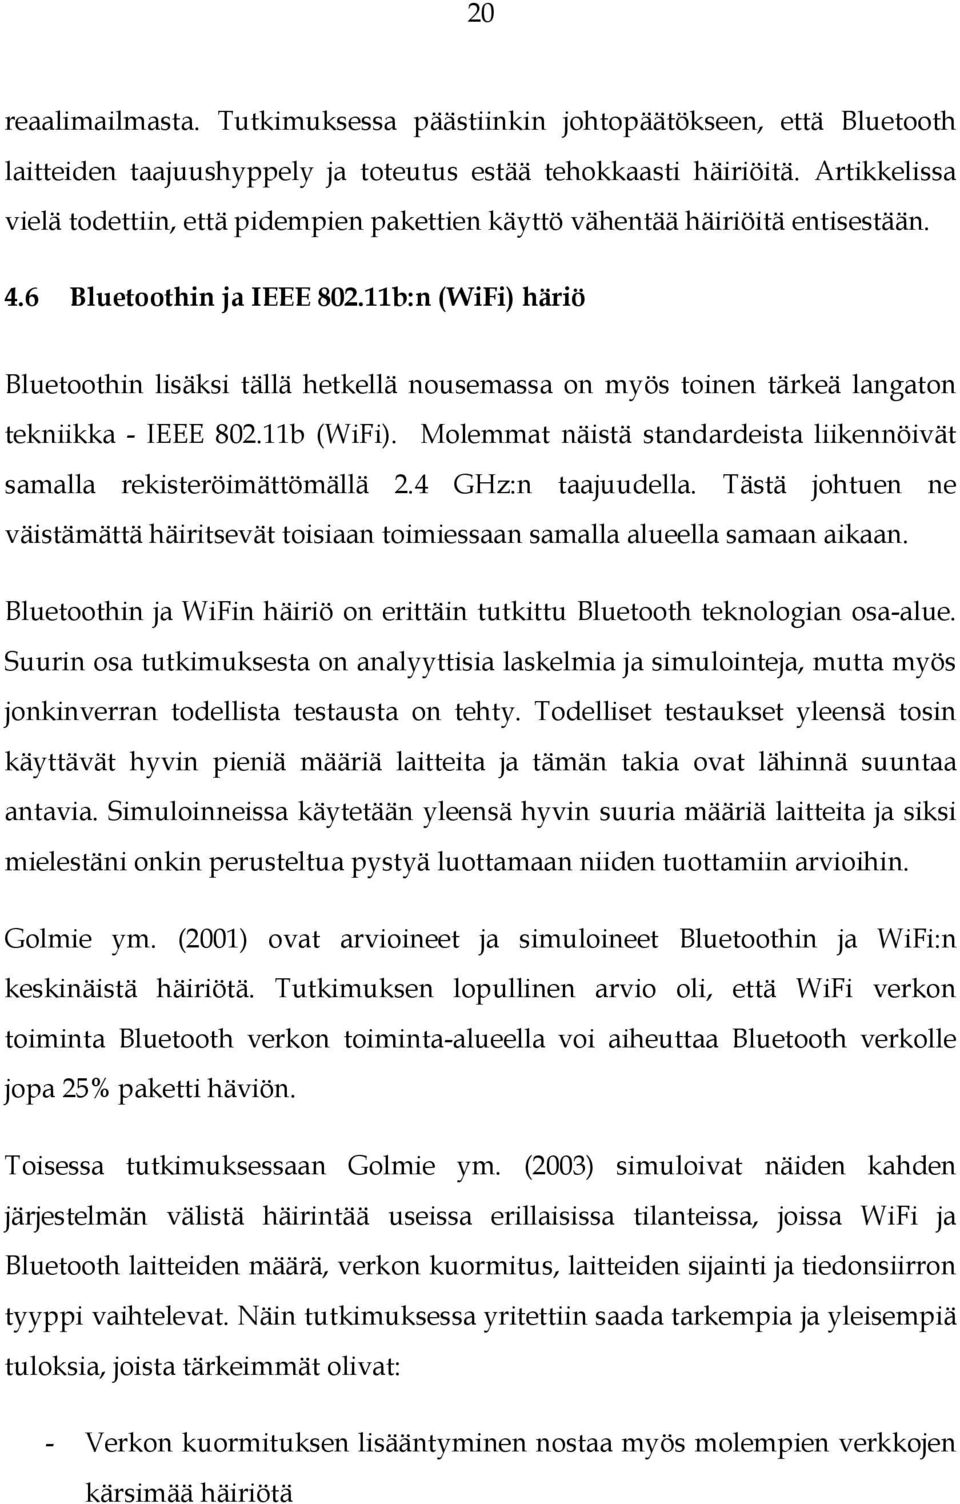 11b:n (WiFi) häriö Bluetoothin lisäksi tällä hetkellä nousemassa on myös toinen tärkeä langaton tekniikka - IEEE 802.11b (WiFi).